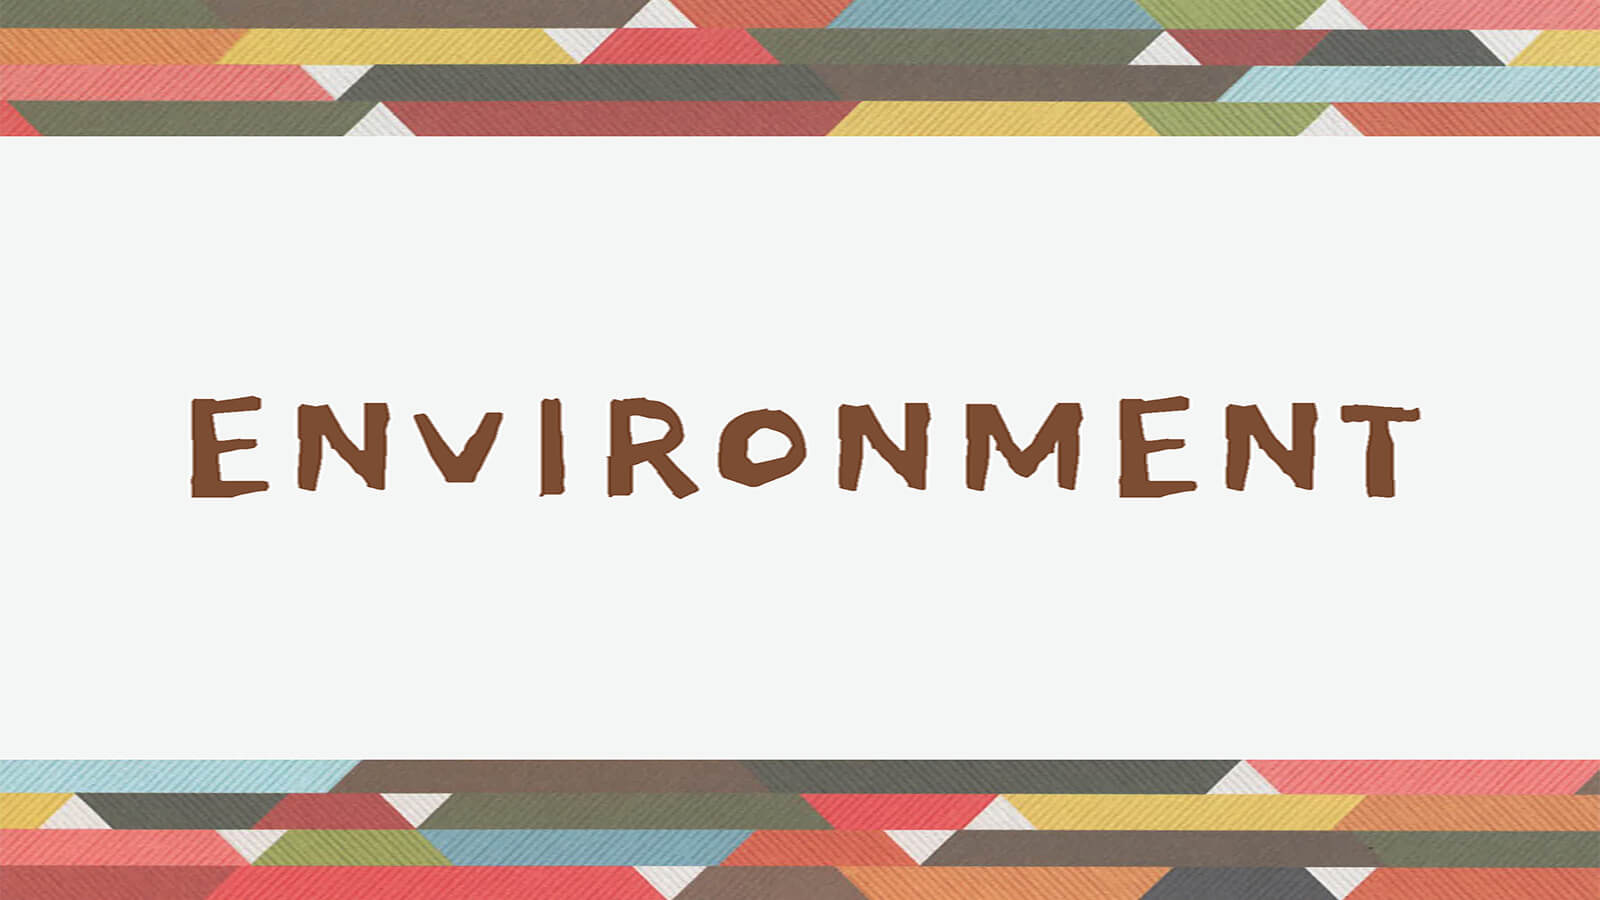 Slide reading "Environment"